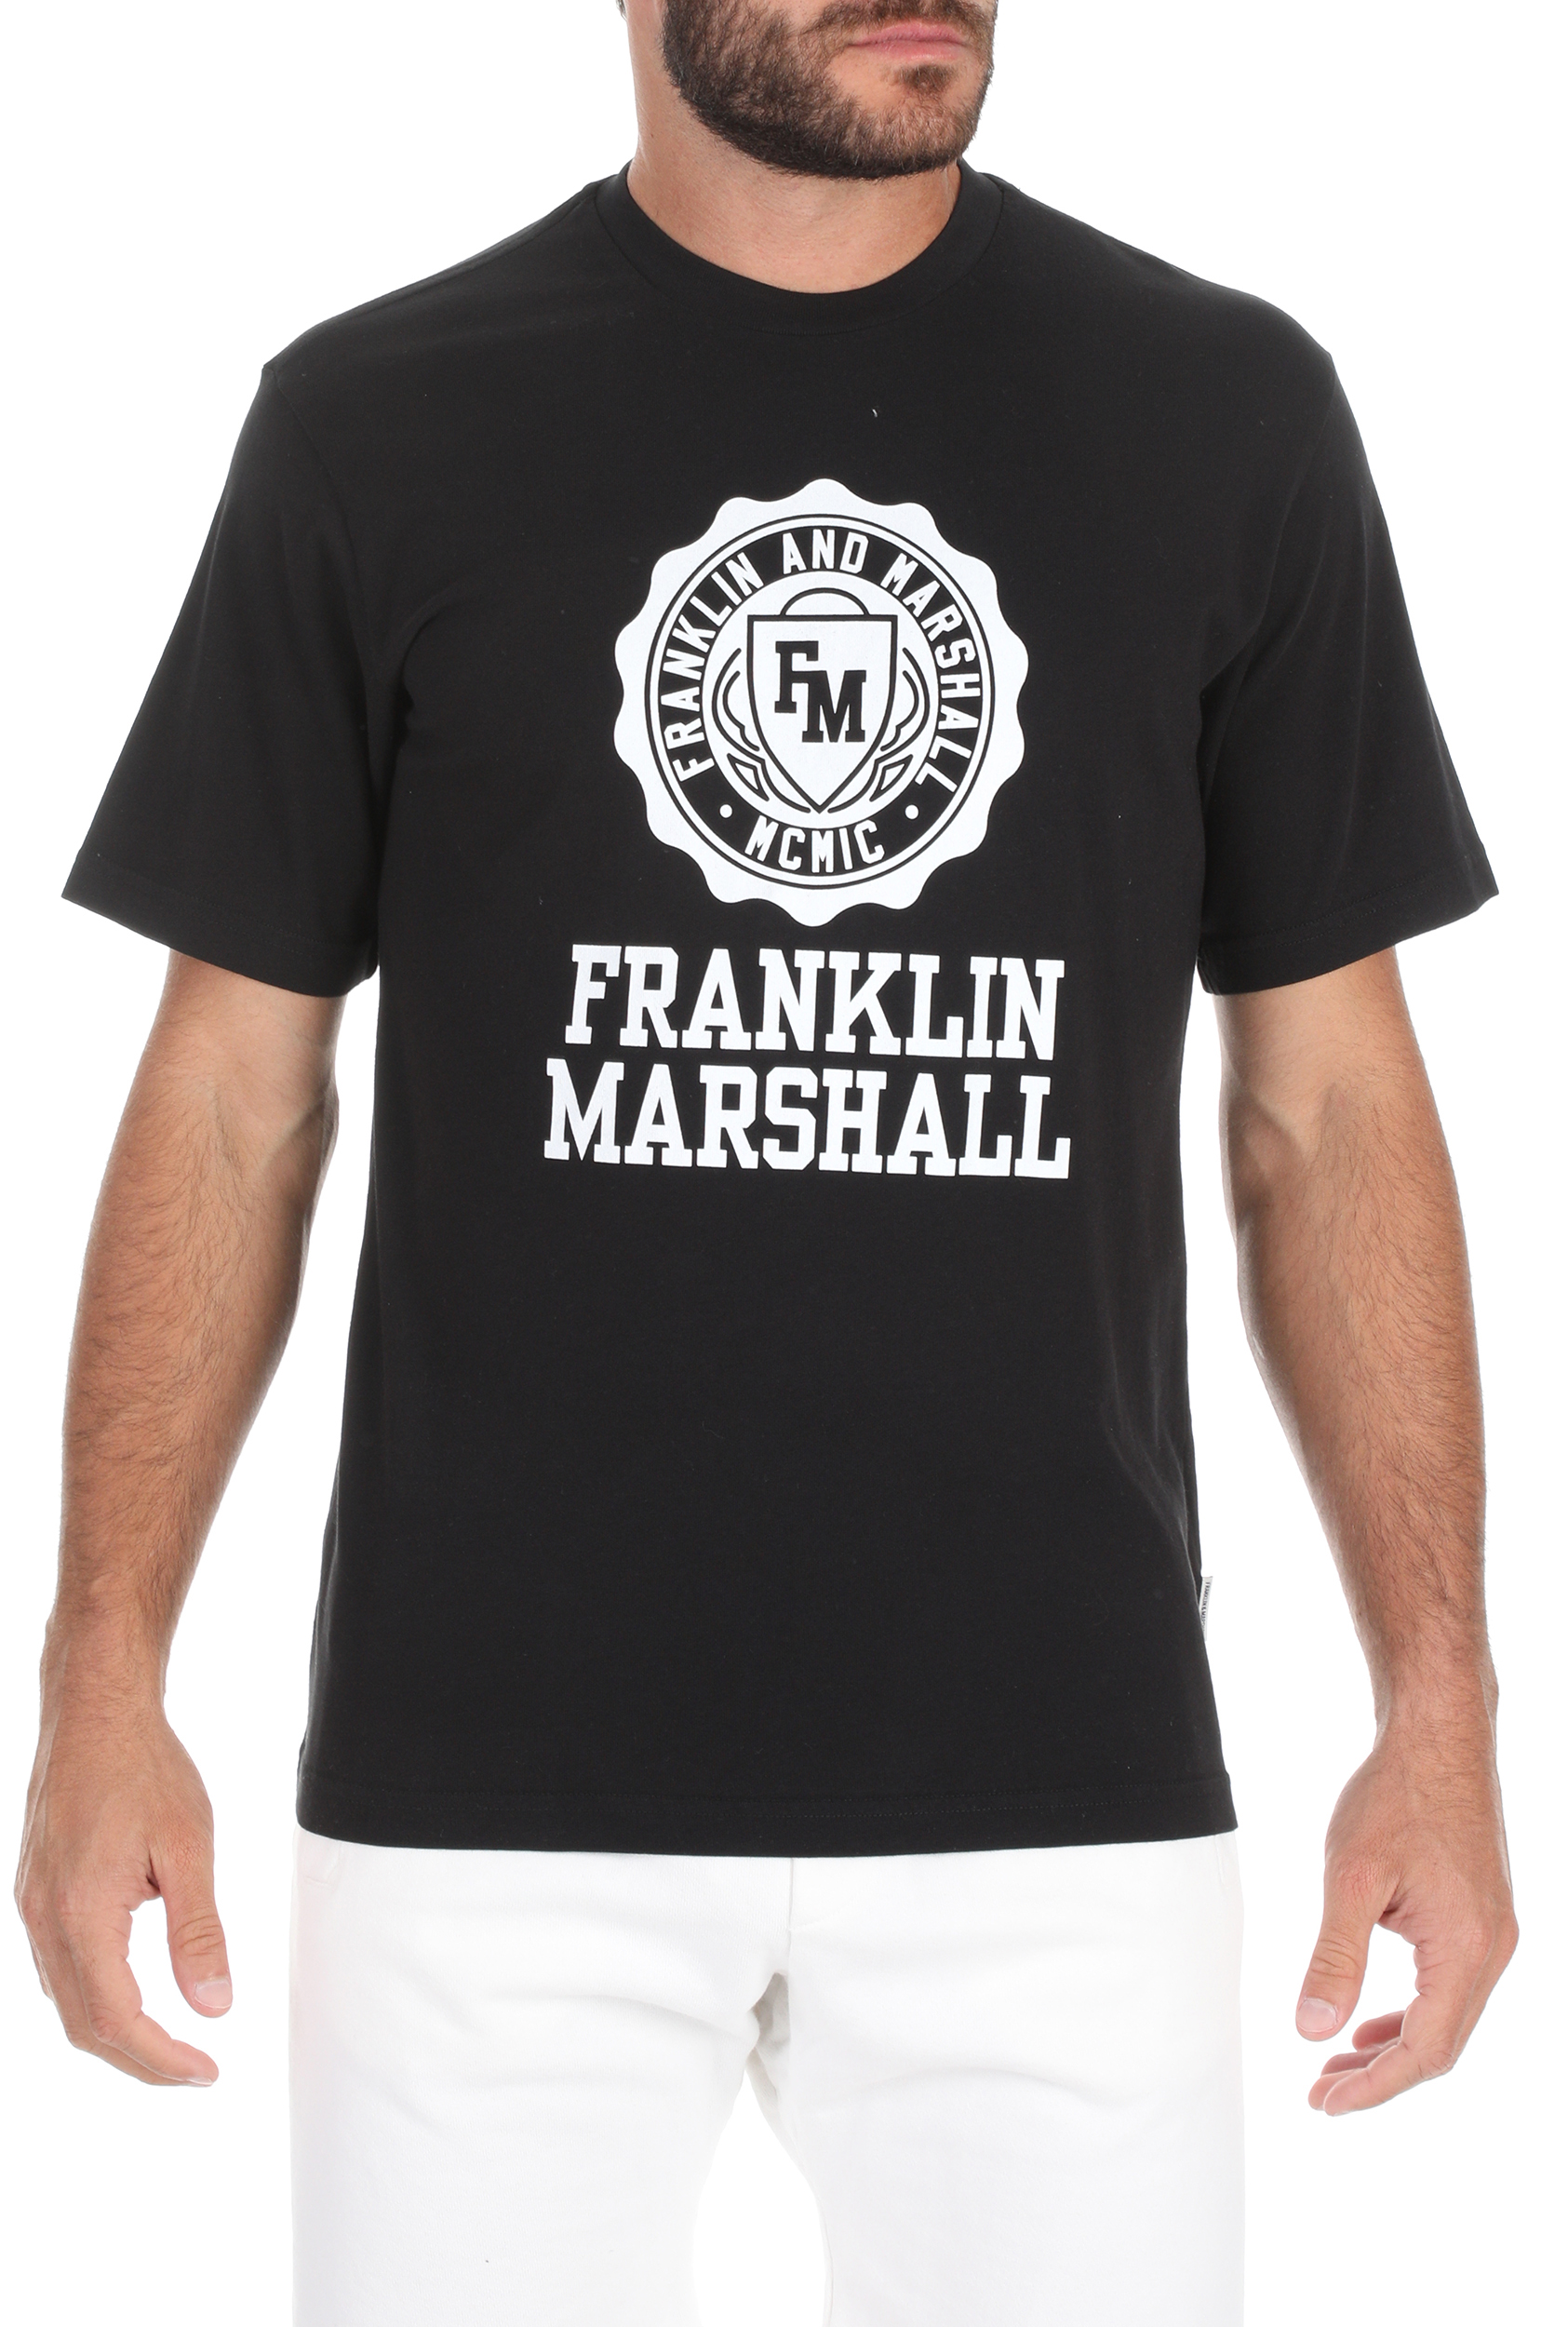 Ανδρικά/Ρούχα/Αθλητικά/T-shirt FRANKLIN & MARSHALL - Ανδρικό t-shirt FRANKLIN & MARSHALL μαύρο